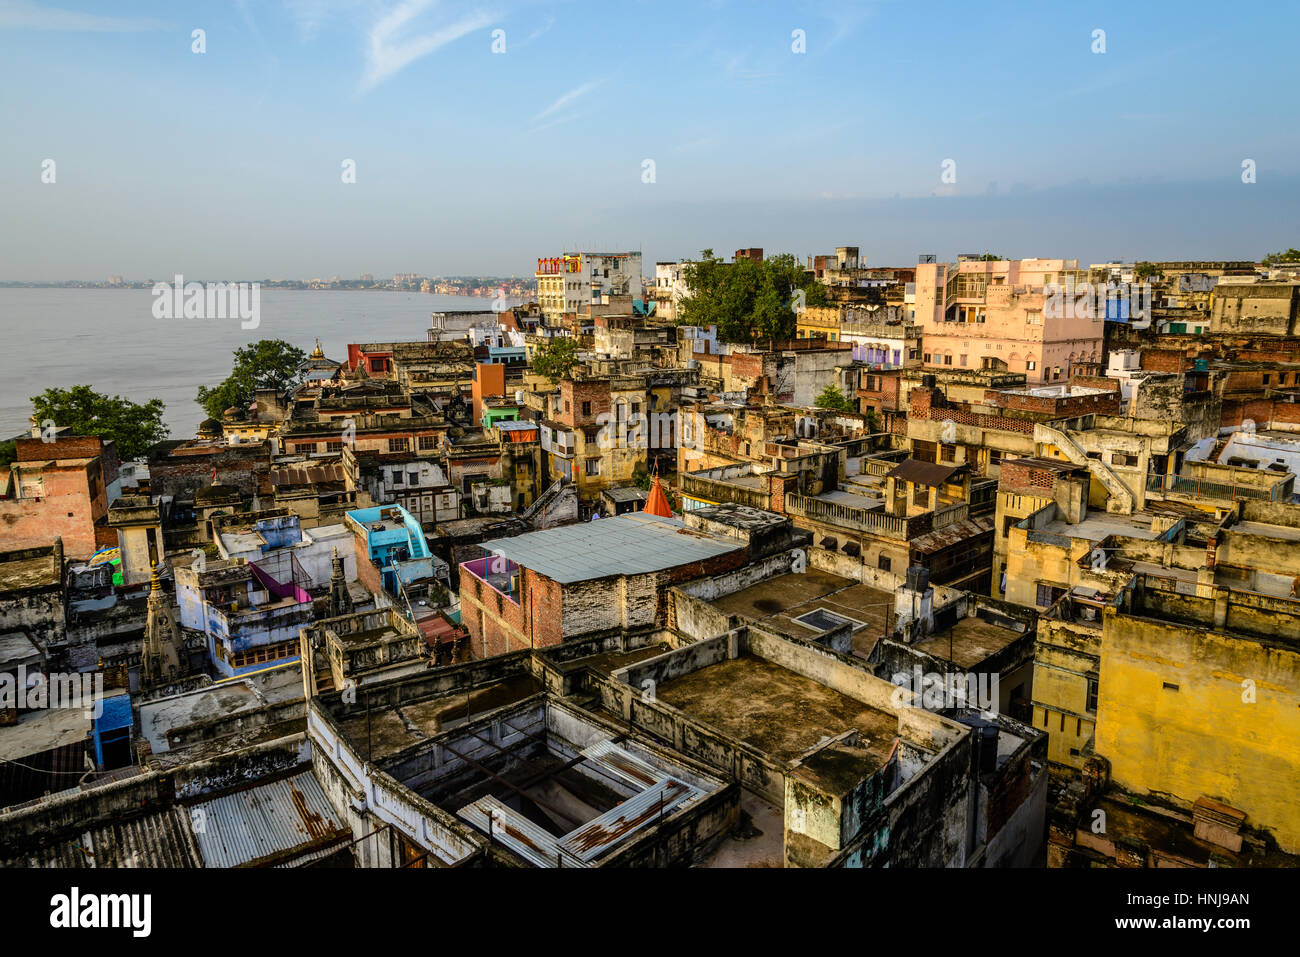 Old city of Varanasi, India Stock Photo